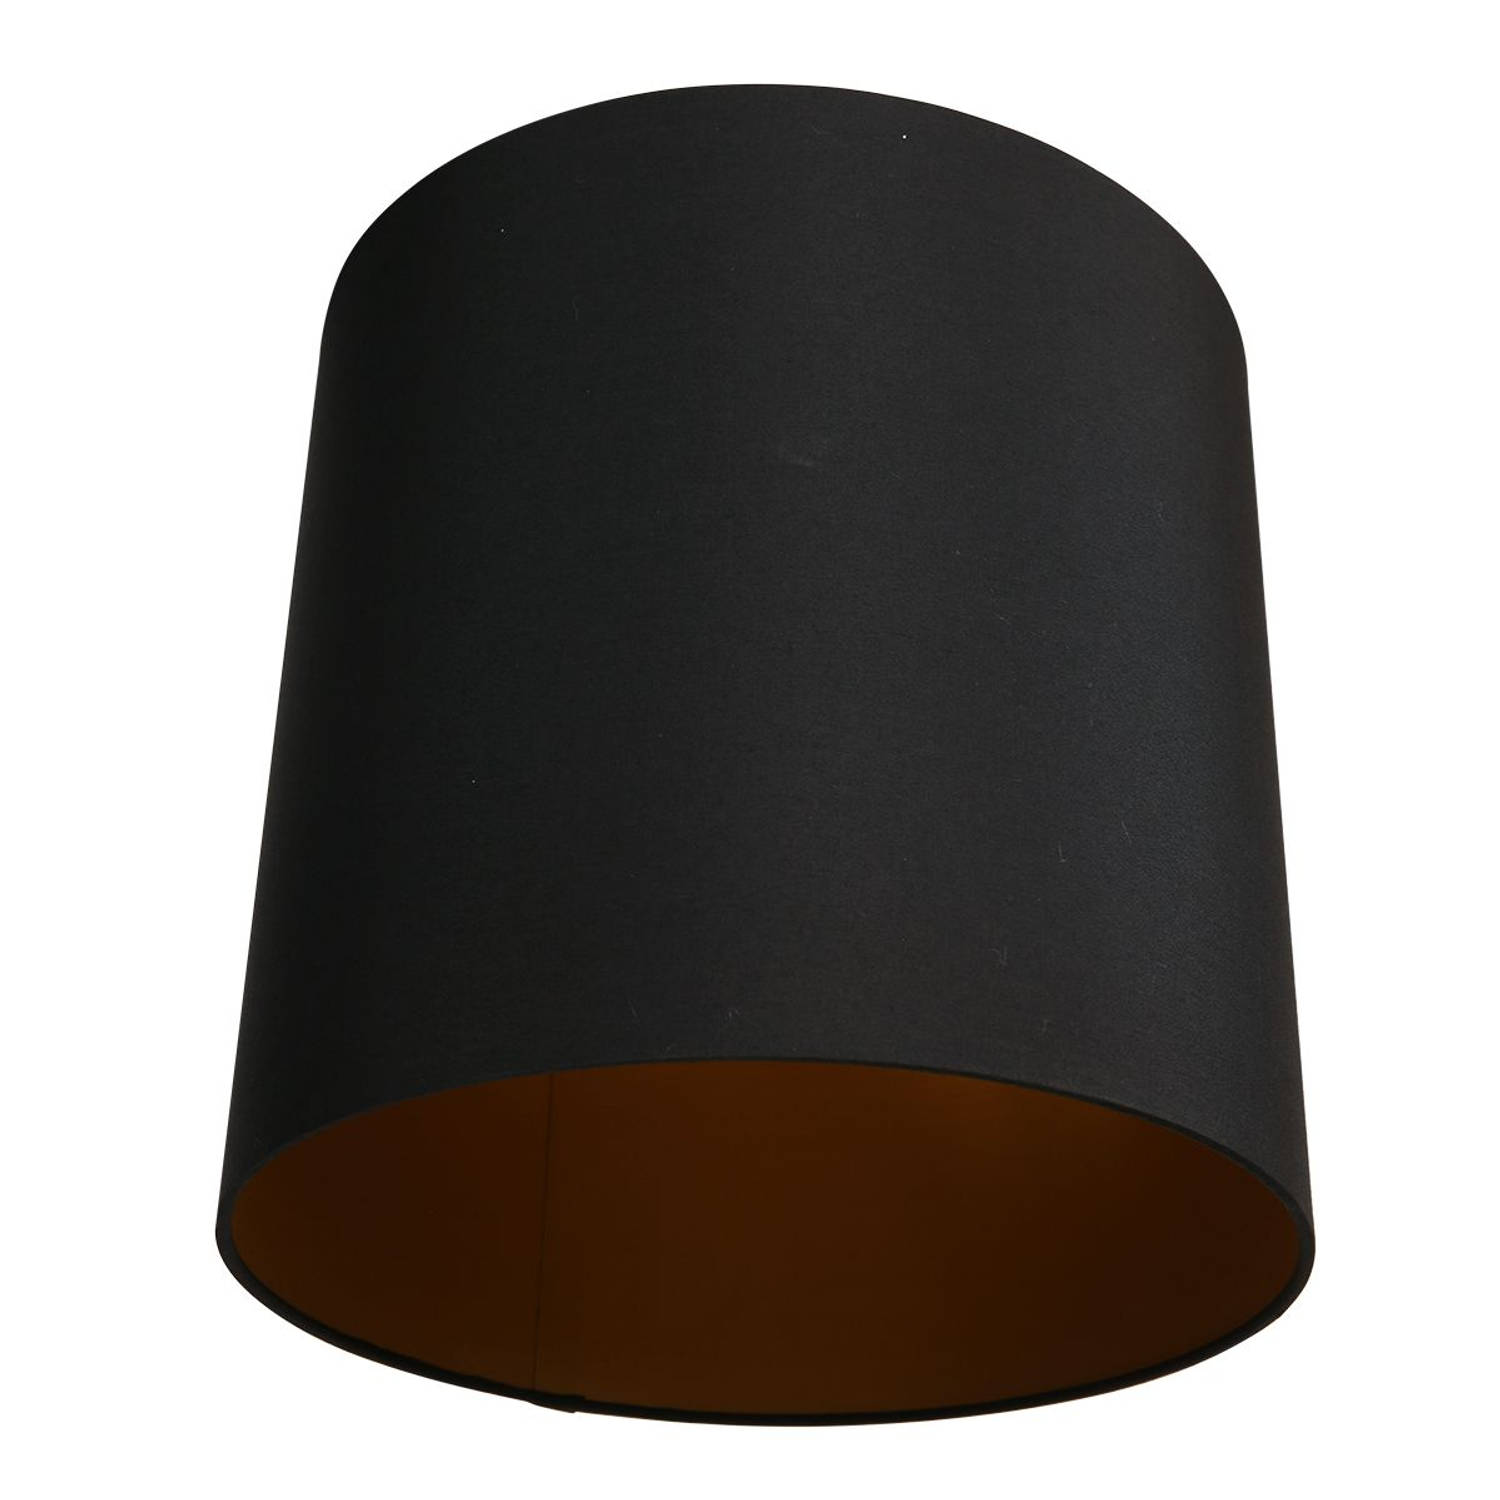 Mexlite Lampenkappen lampenkappen - ø 30 cm - E27 (grote fitting) - zwart